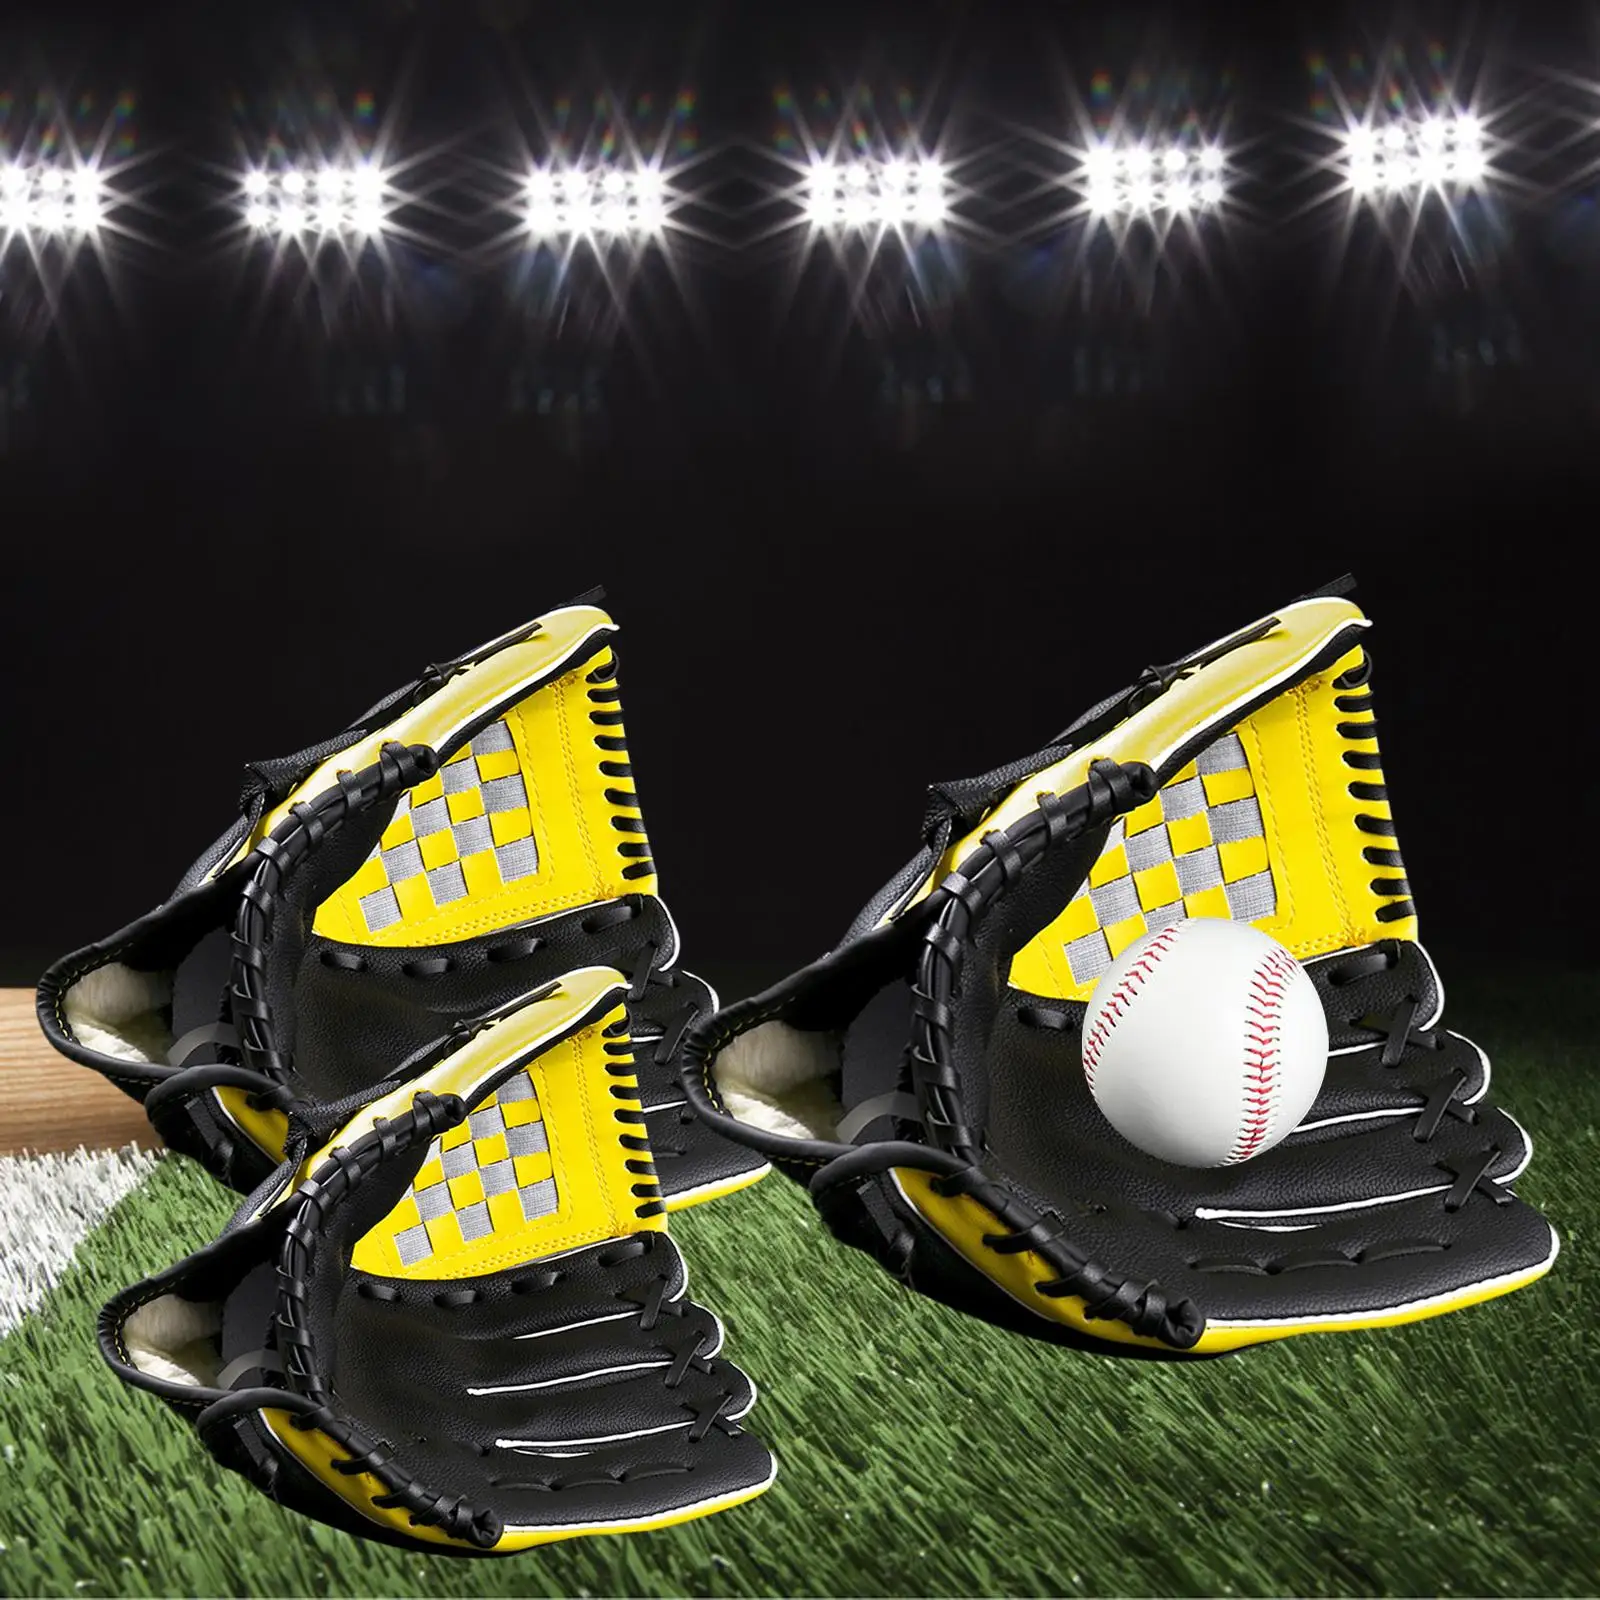 Baseball Glove Catchers PU for Beginners Training Practice Equipment